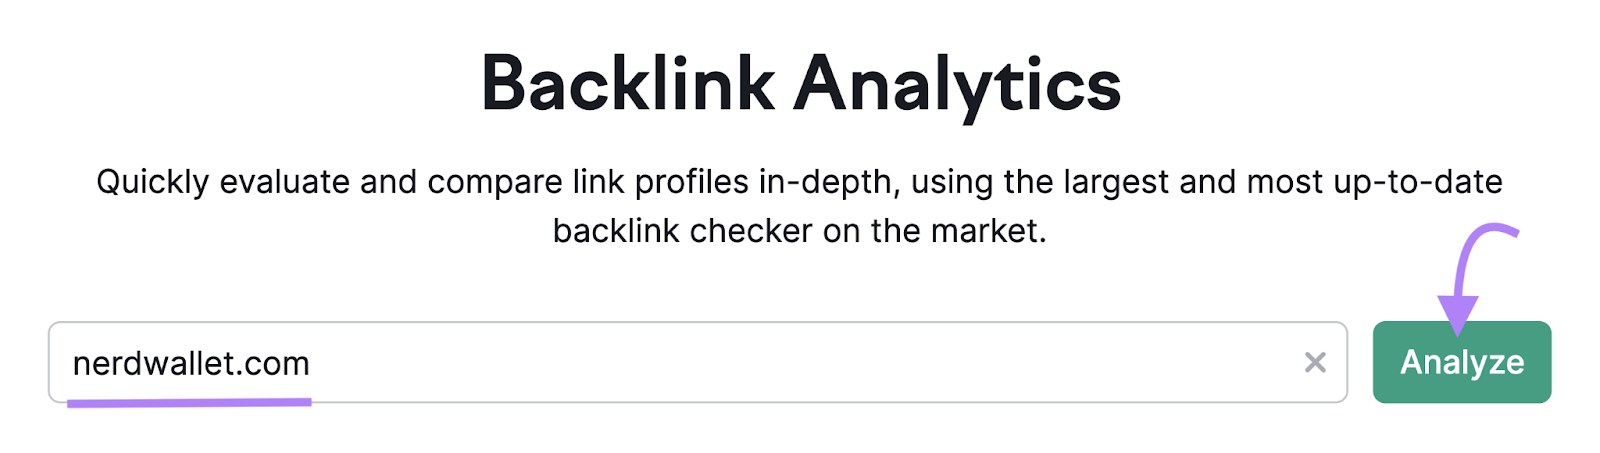 "nerdwallet.com" entered into the Backlink Analytics instrumentality   hunt  bar